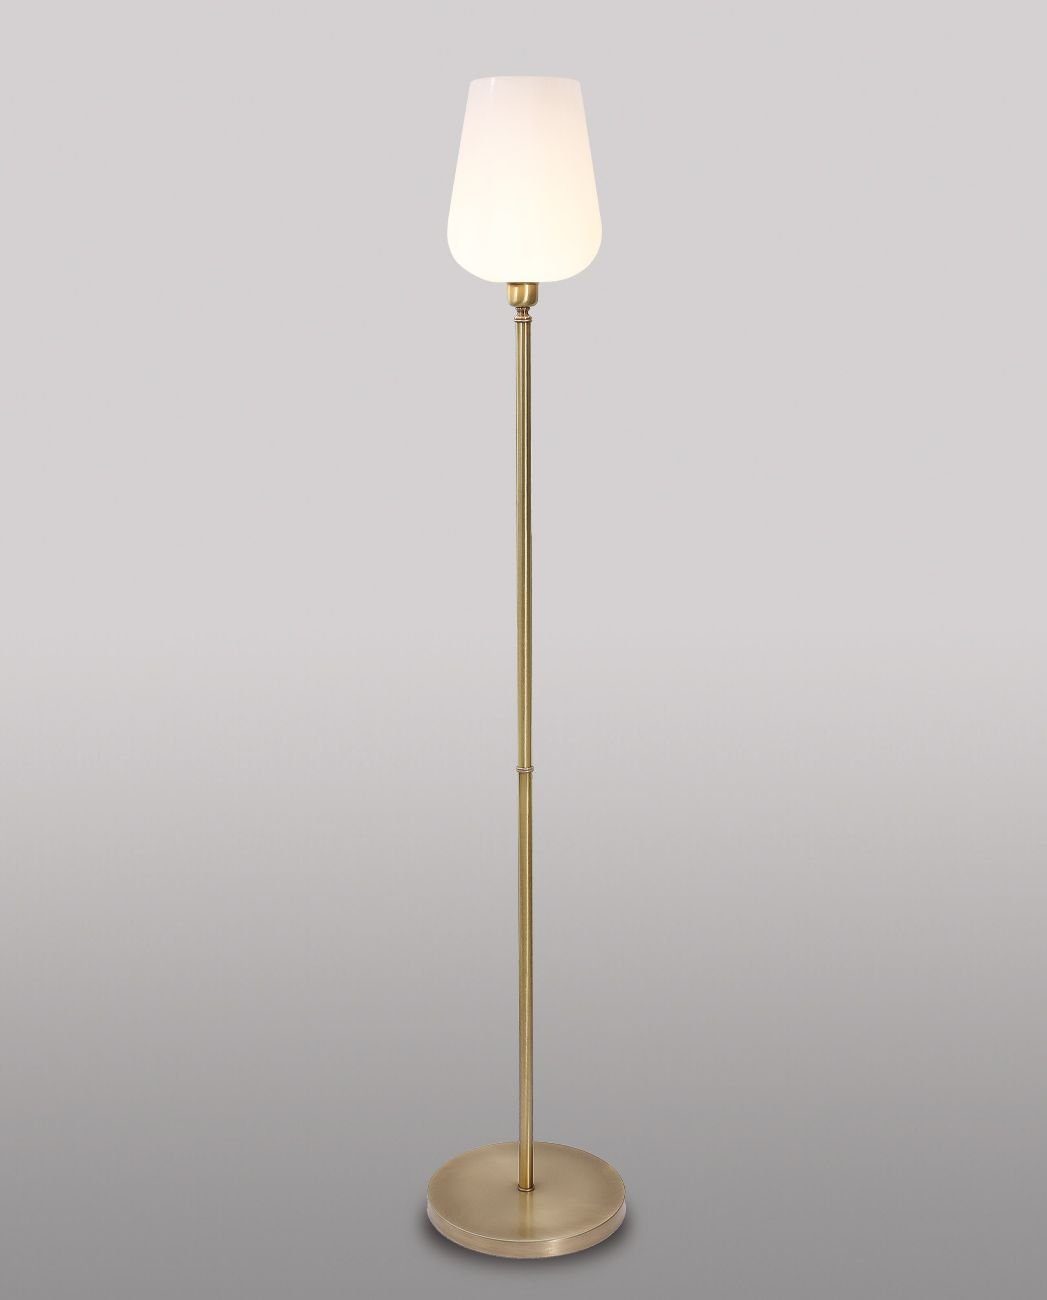 Handarbeit ohne Leuchtmittel, Vintage Bronze Stehlampe TALIS, Licht-Erlebnisse Weiß in Messing Glasschirm Standleuchte